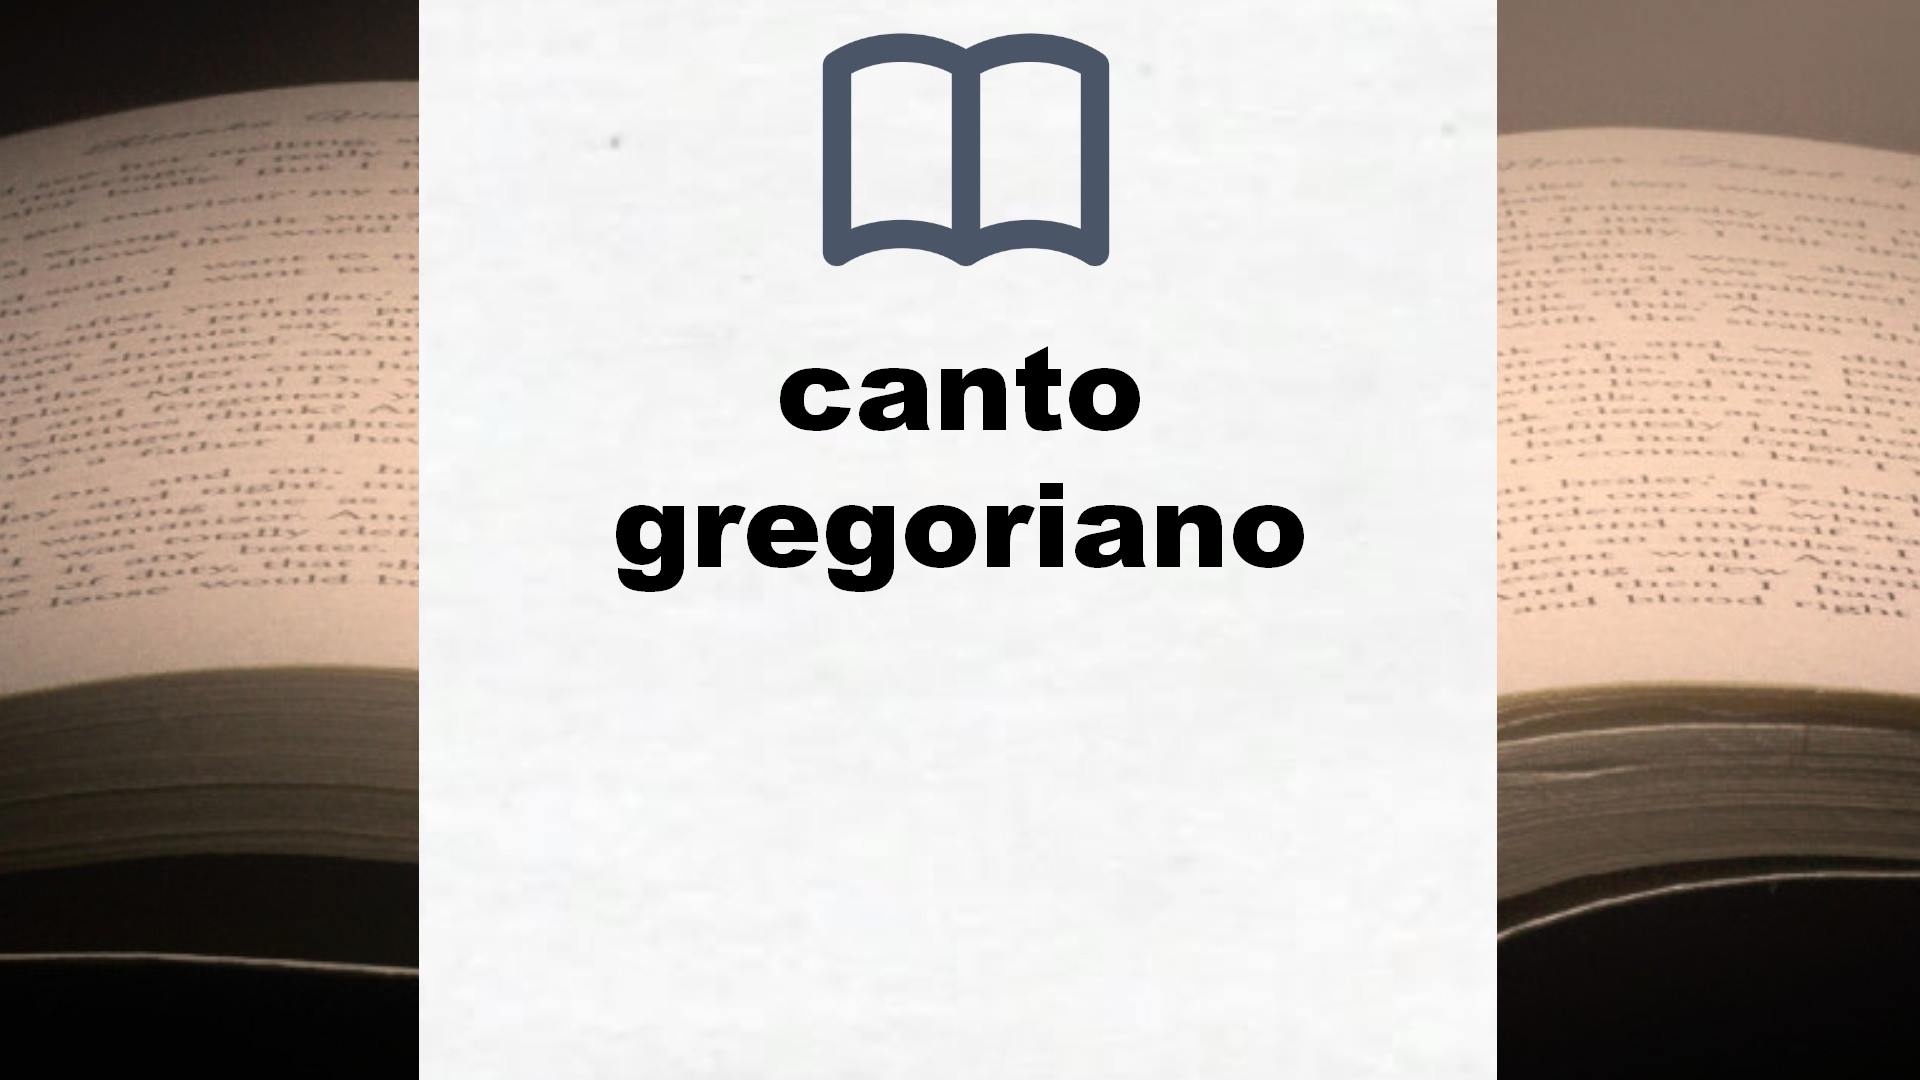 Libros sobre canto gregoriano